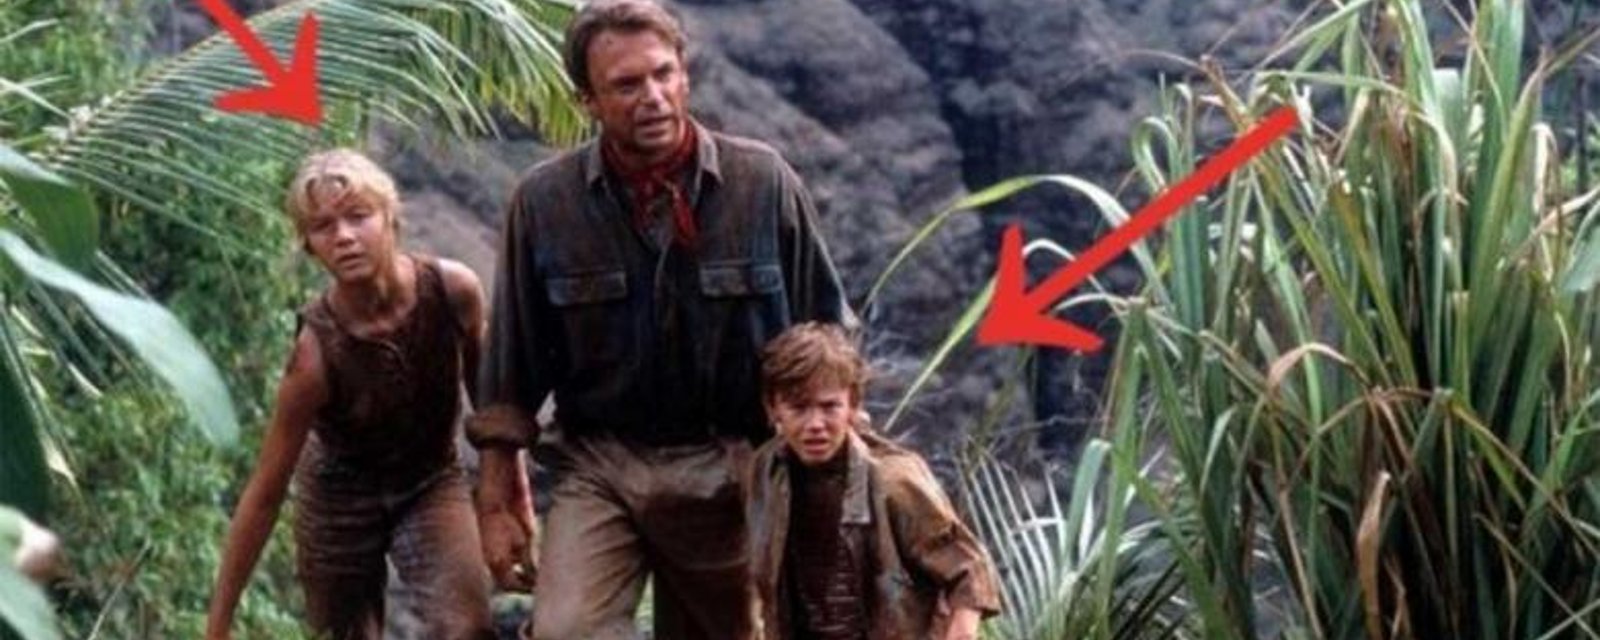 25 ans plus tard, voici de quoi ont l'air les deux enfants de Jurassic Park!